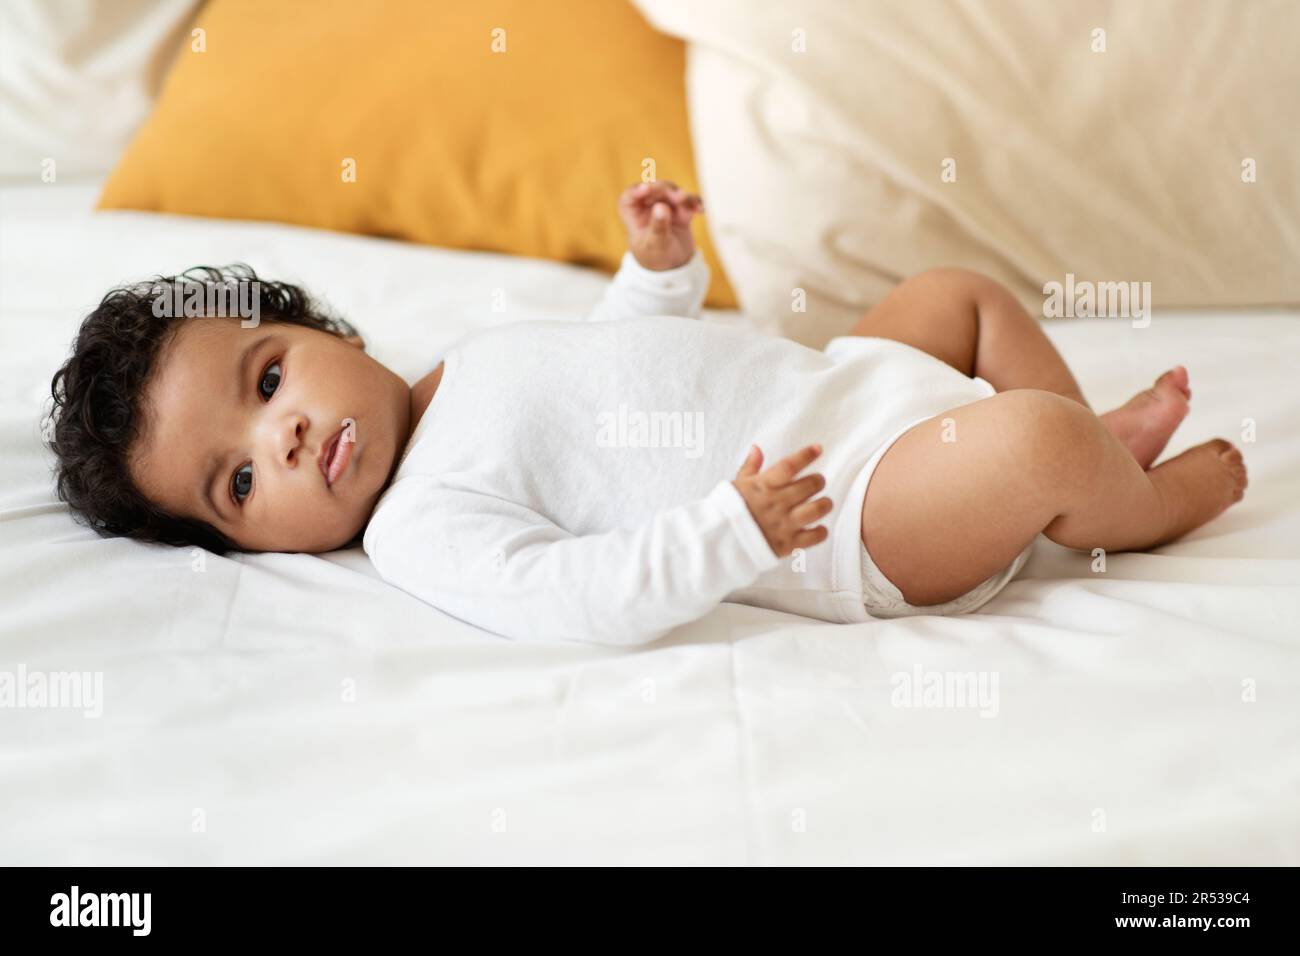 Petit enfant noir sérieux fille ou garçon dans les vêtements se trouve sur blanc confort lit dans la chambre. Soins de santé, nouveau-né Banque D'Images